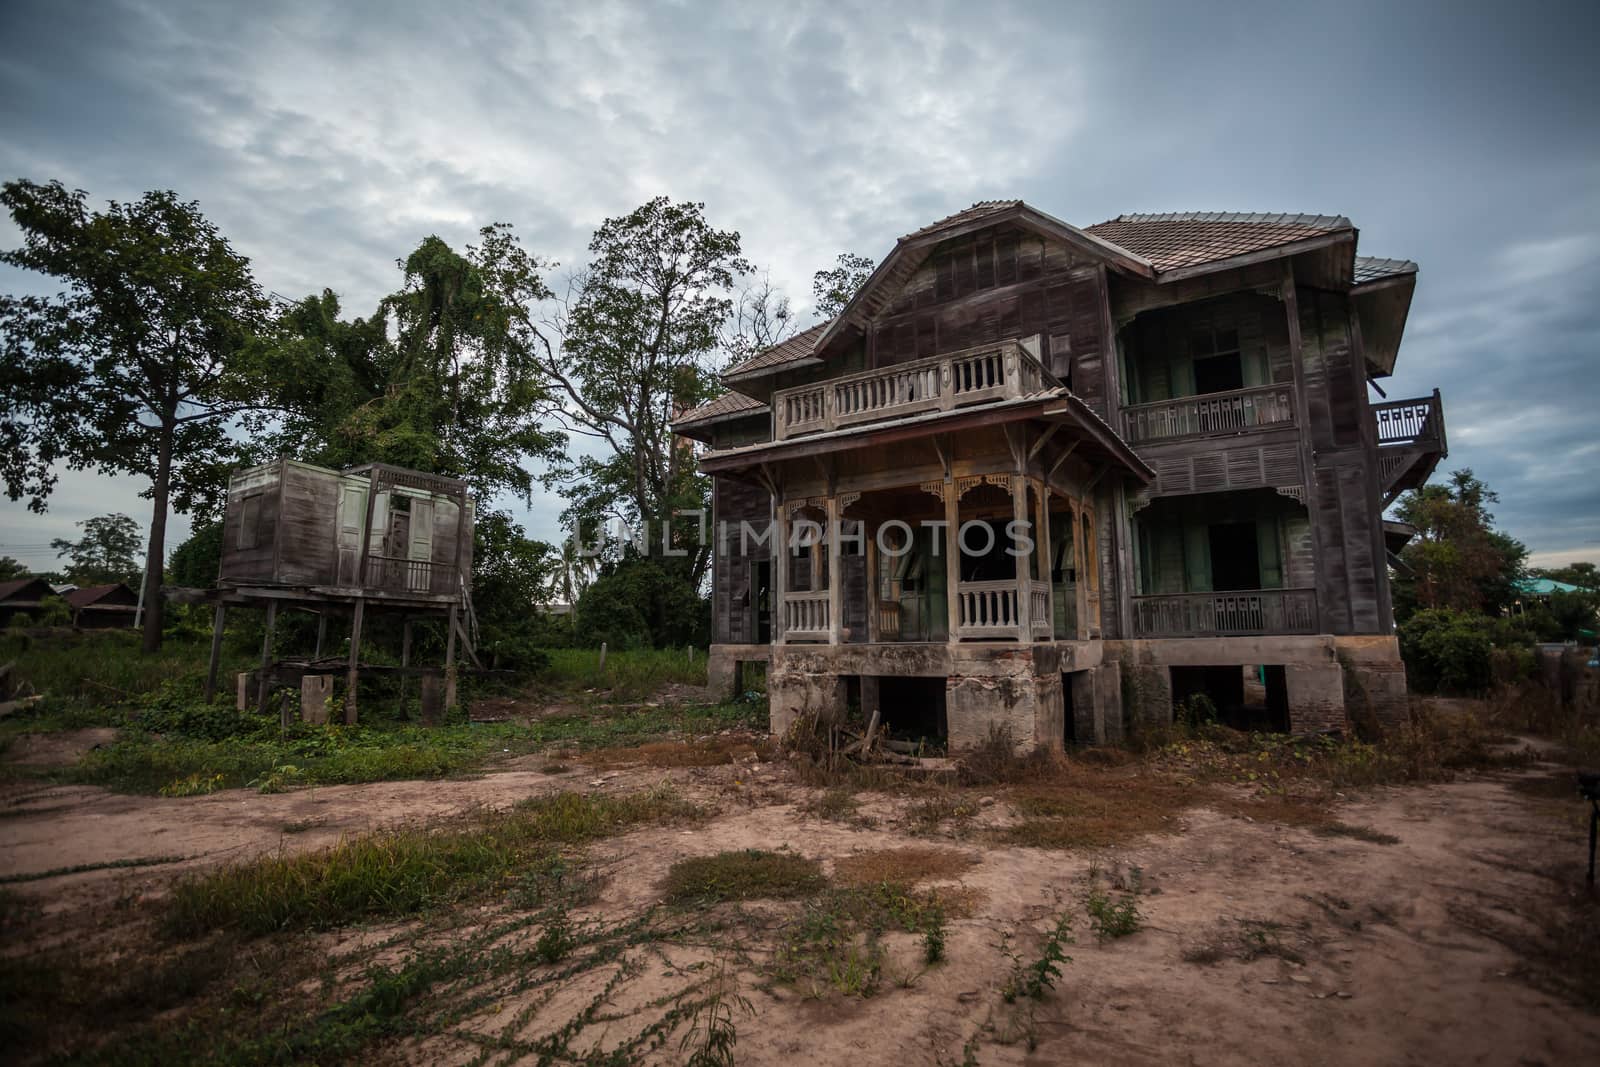 abandoned old house on twilight